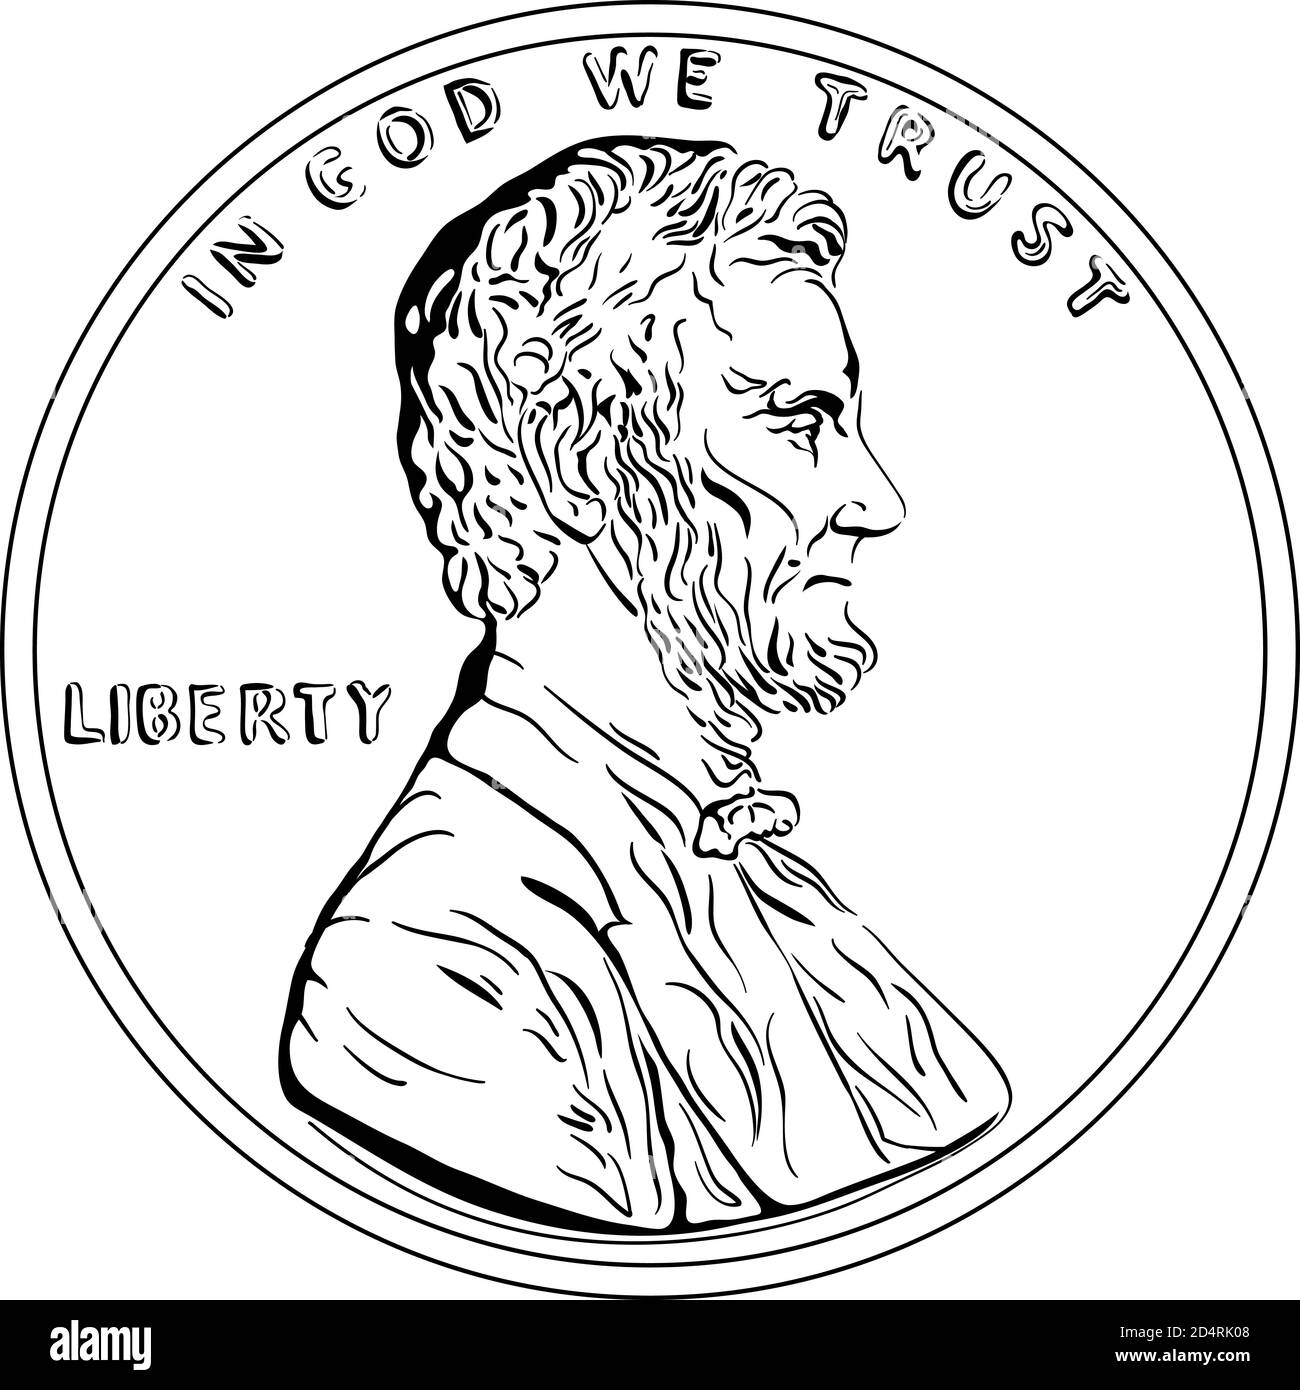 American Money, États-Unis un cent ou un penny, le président Lincoln sur l'inverse. Image en noir et blanc Illustration de Vecteur